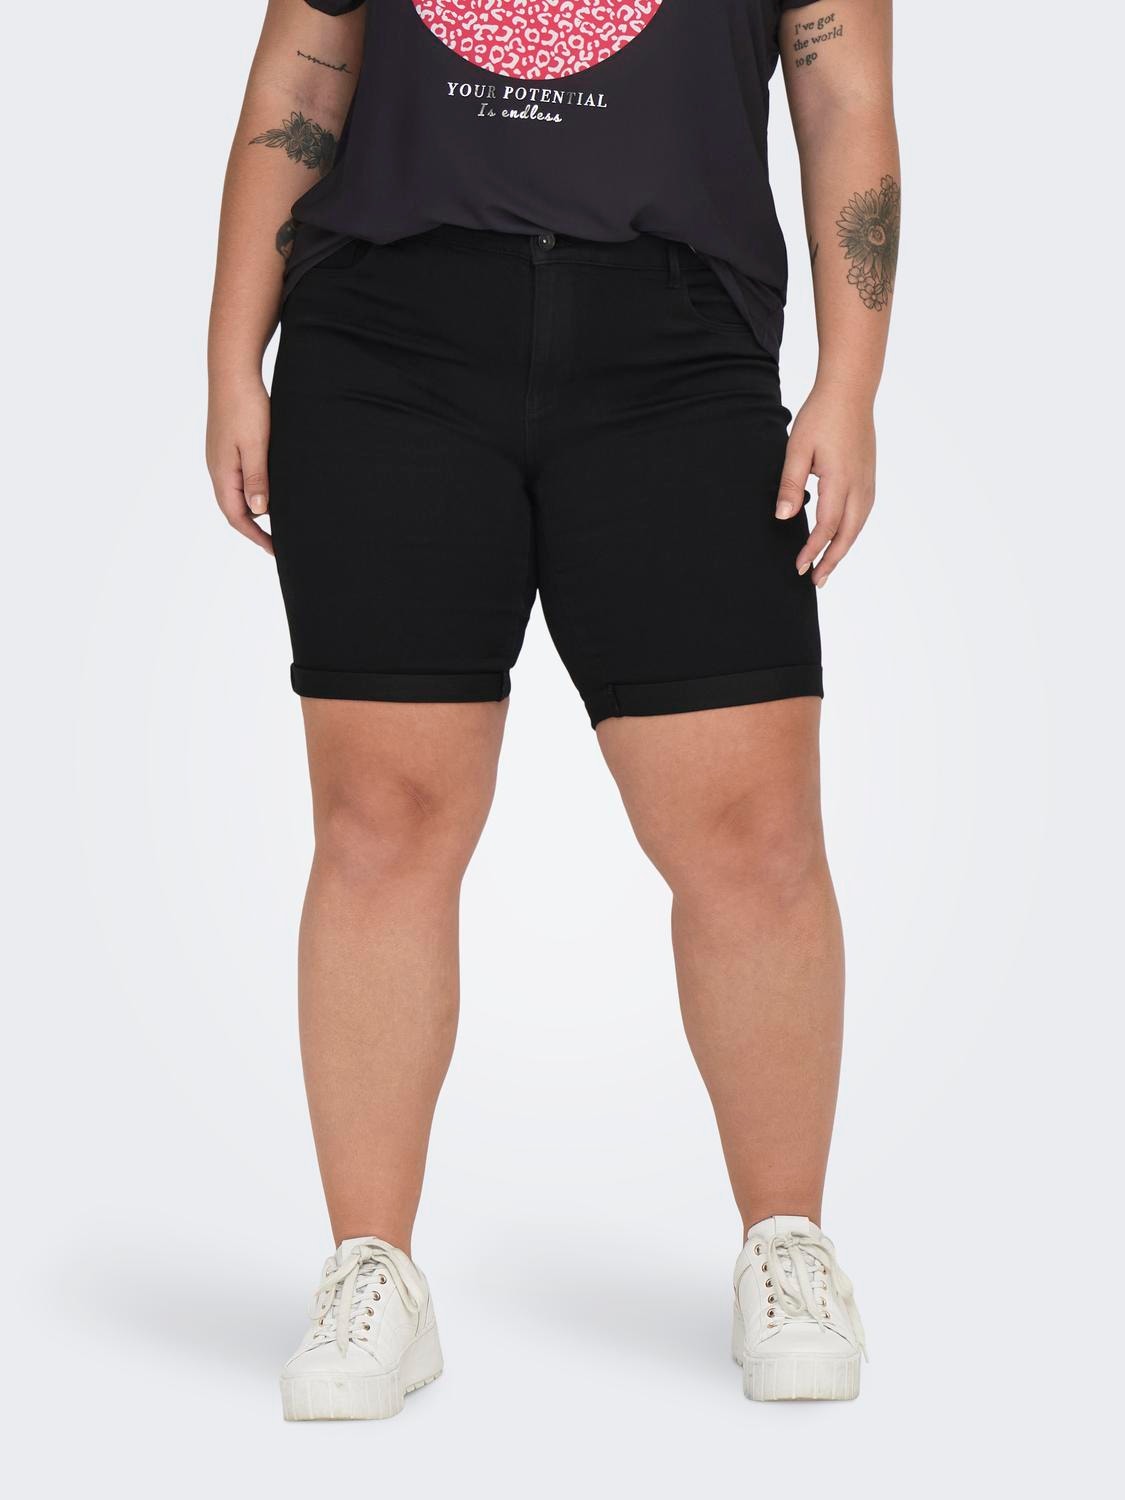 ONLY Skinny fit Omvouwbare zomen Shorts -Black - 15281047